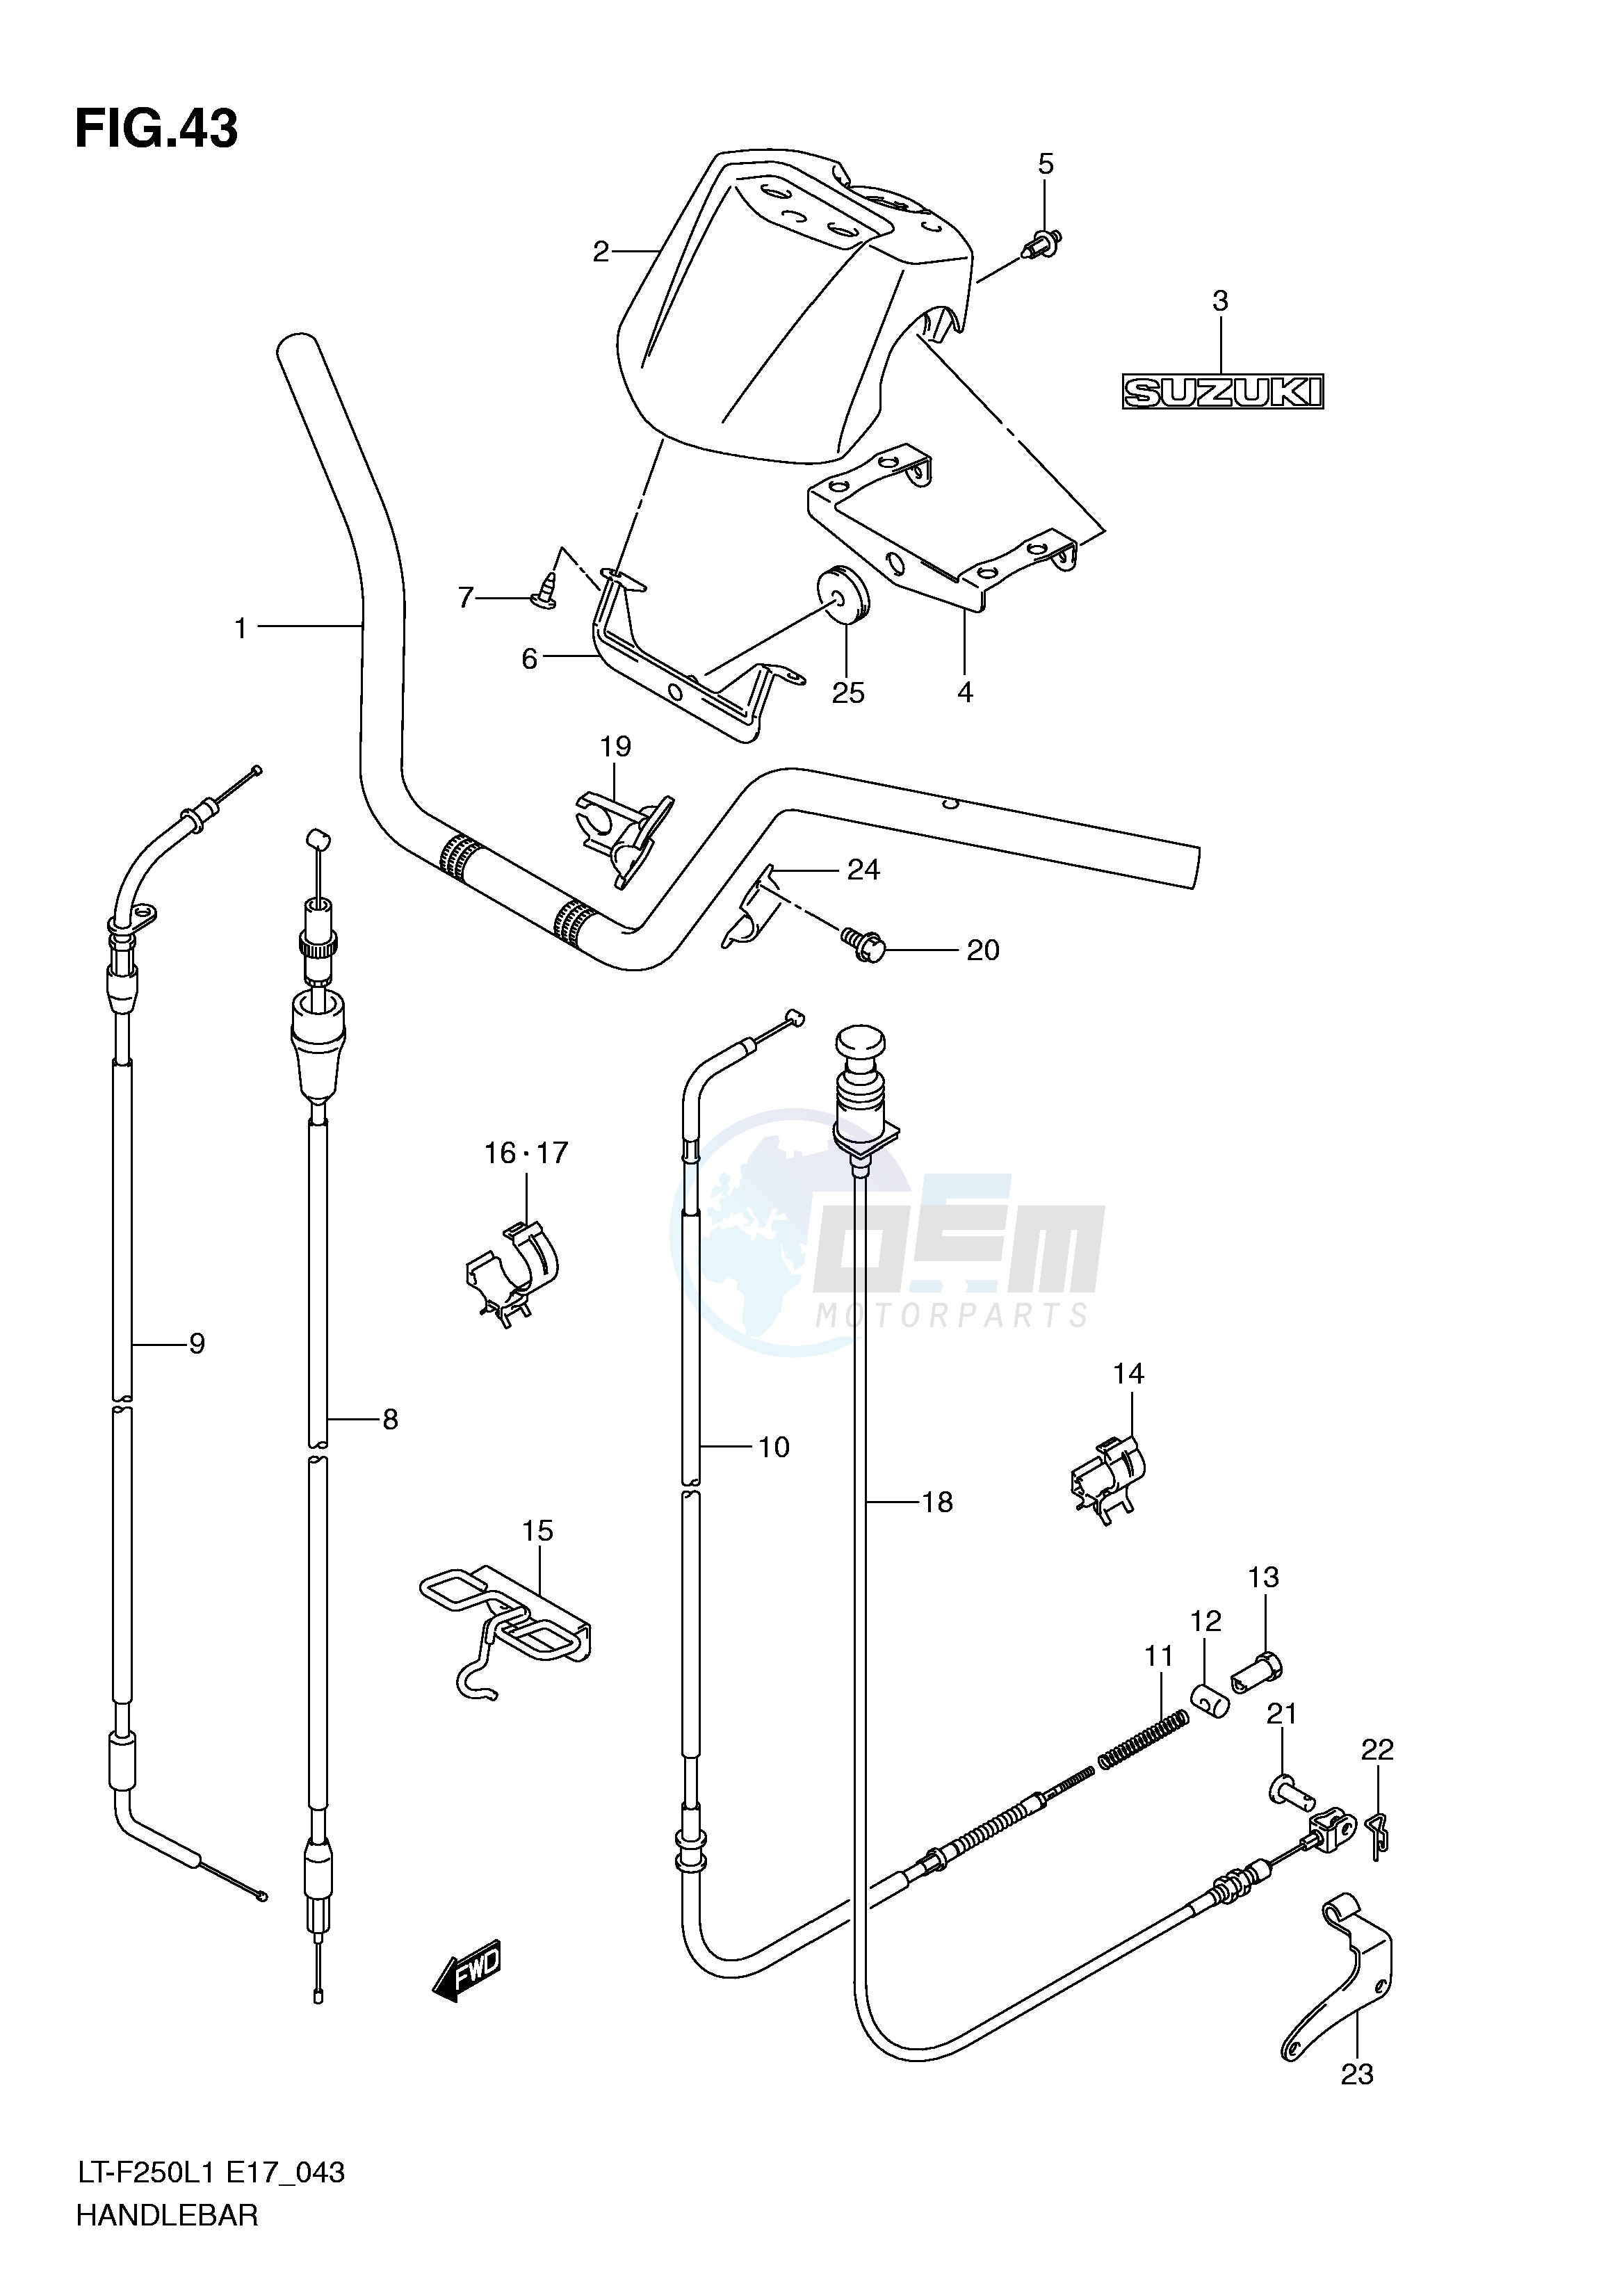 HANDLE BAR (LT-F250L1 E17) blueprint